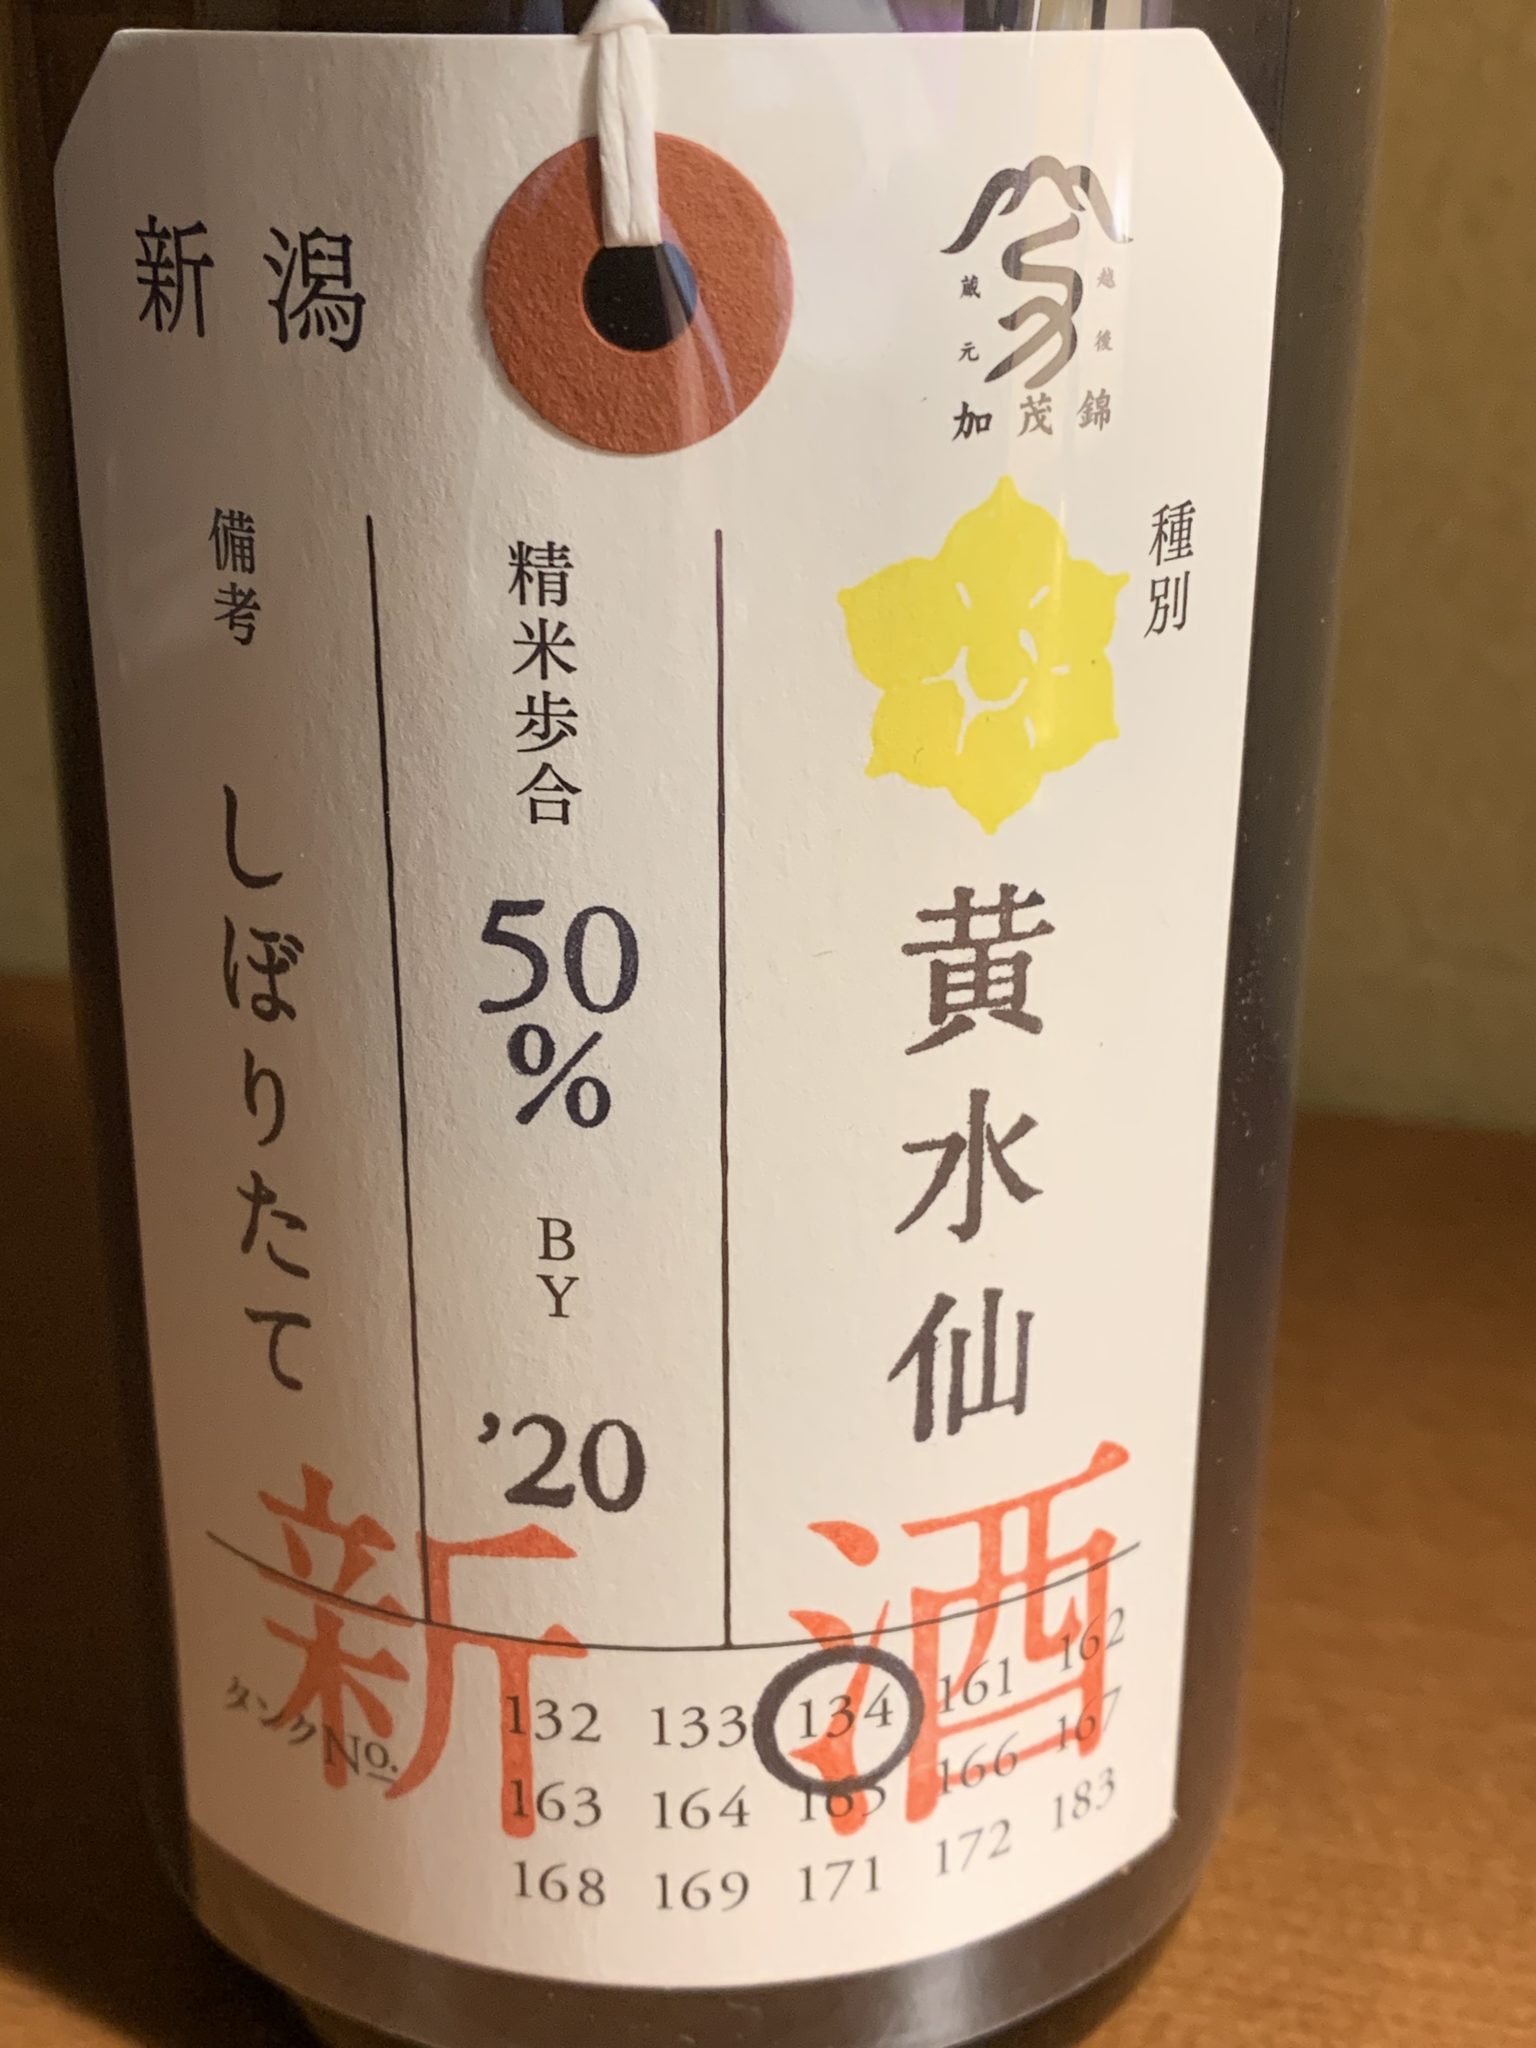 新潟の日本酒『荷札酒黄水仙 しぼりたて新酒』は低アルコールながらピュアな香りと旨みが満載